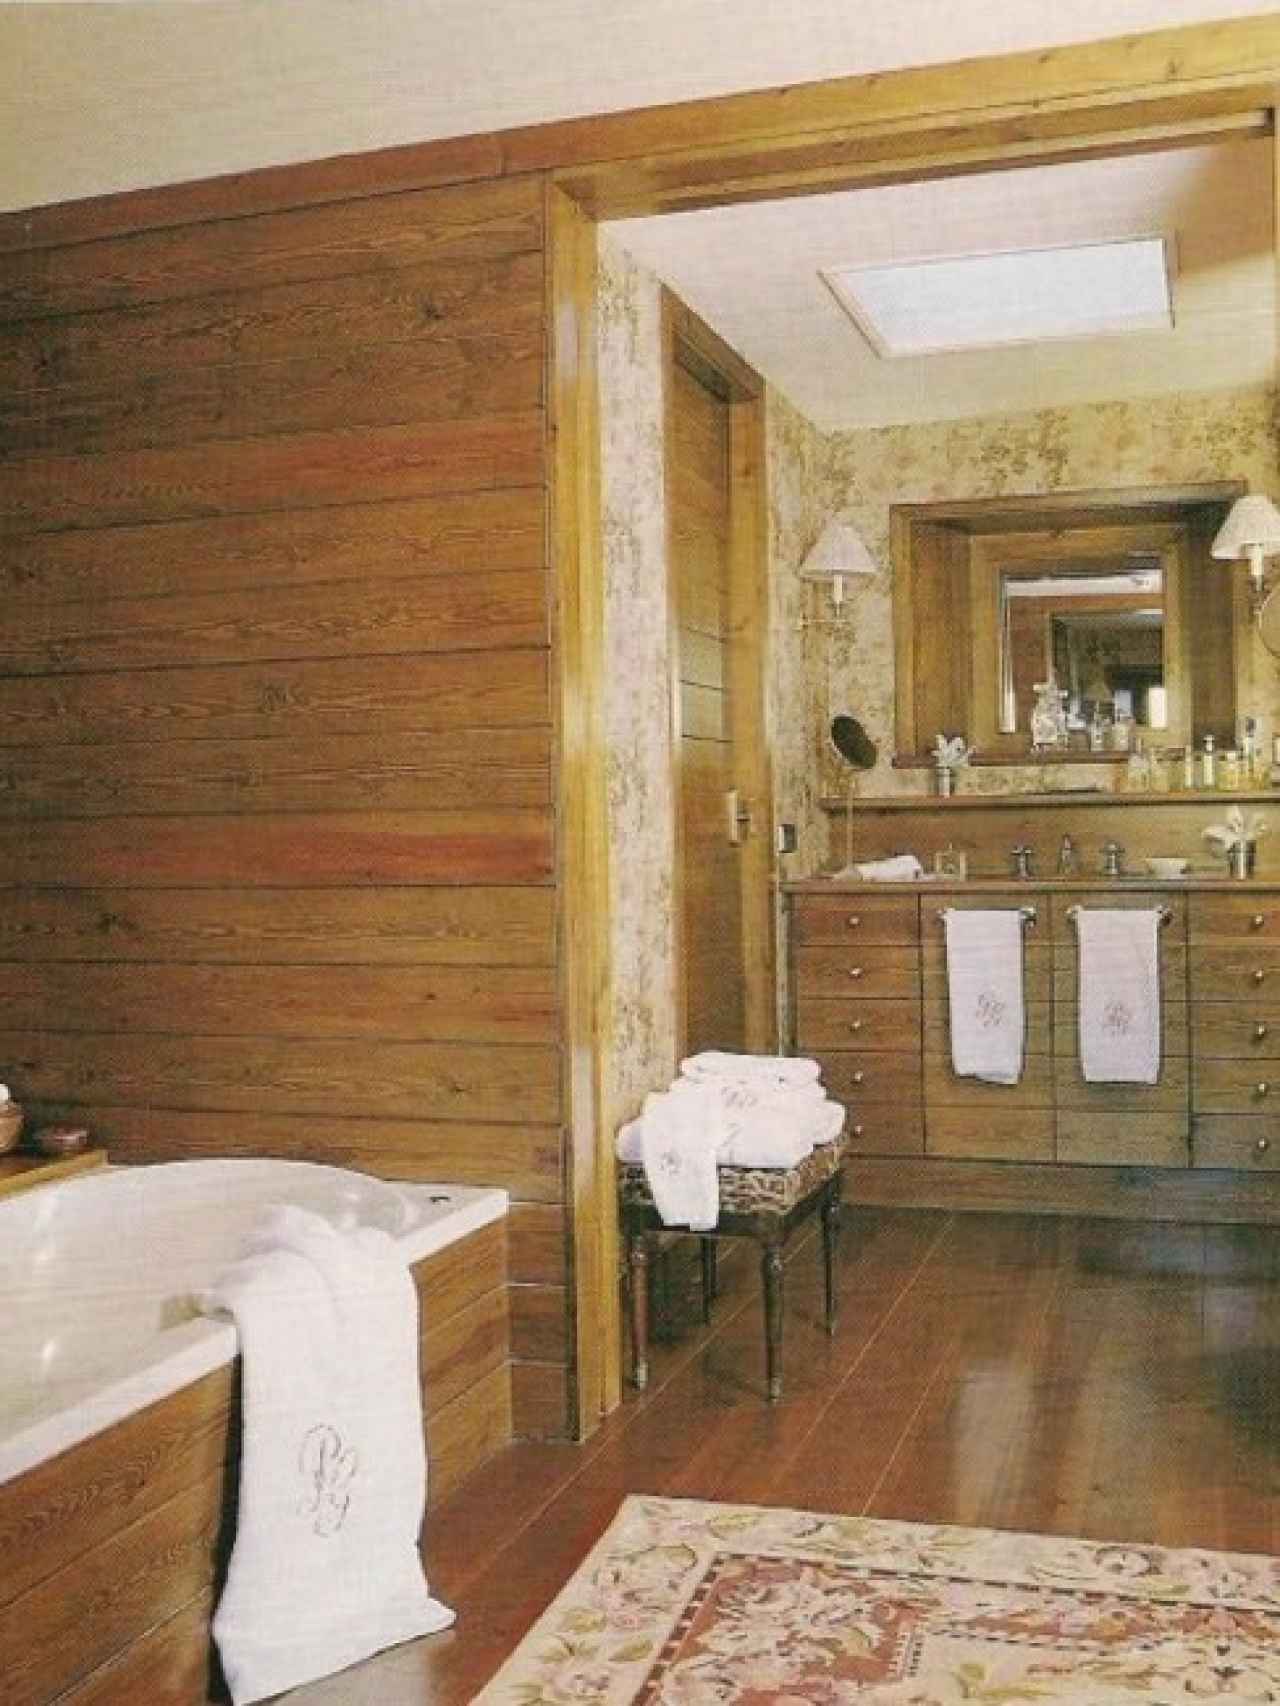 Imagen de uno de los baños de la casa.